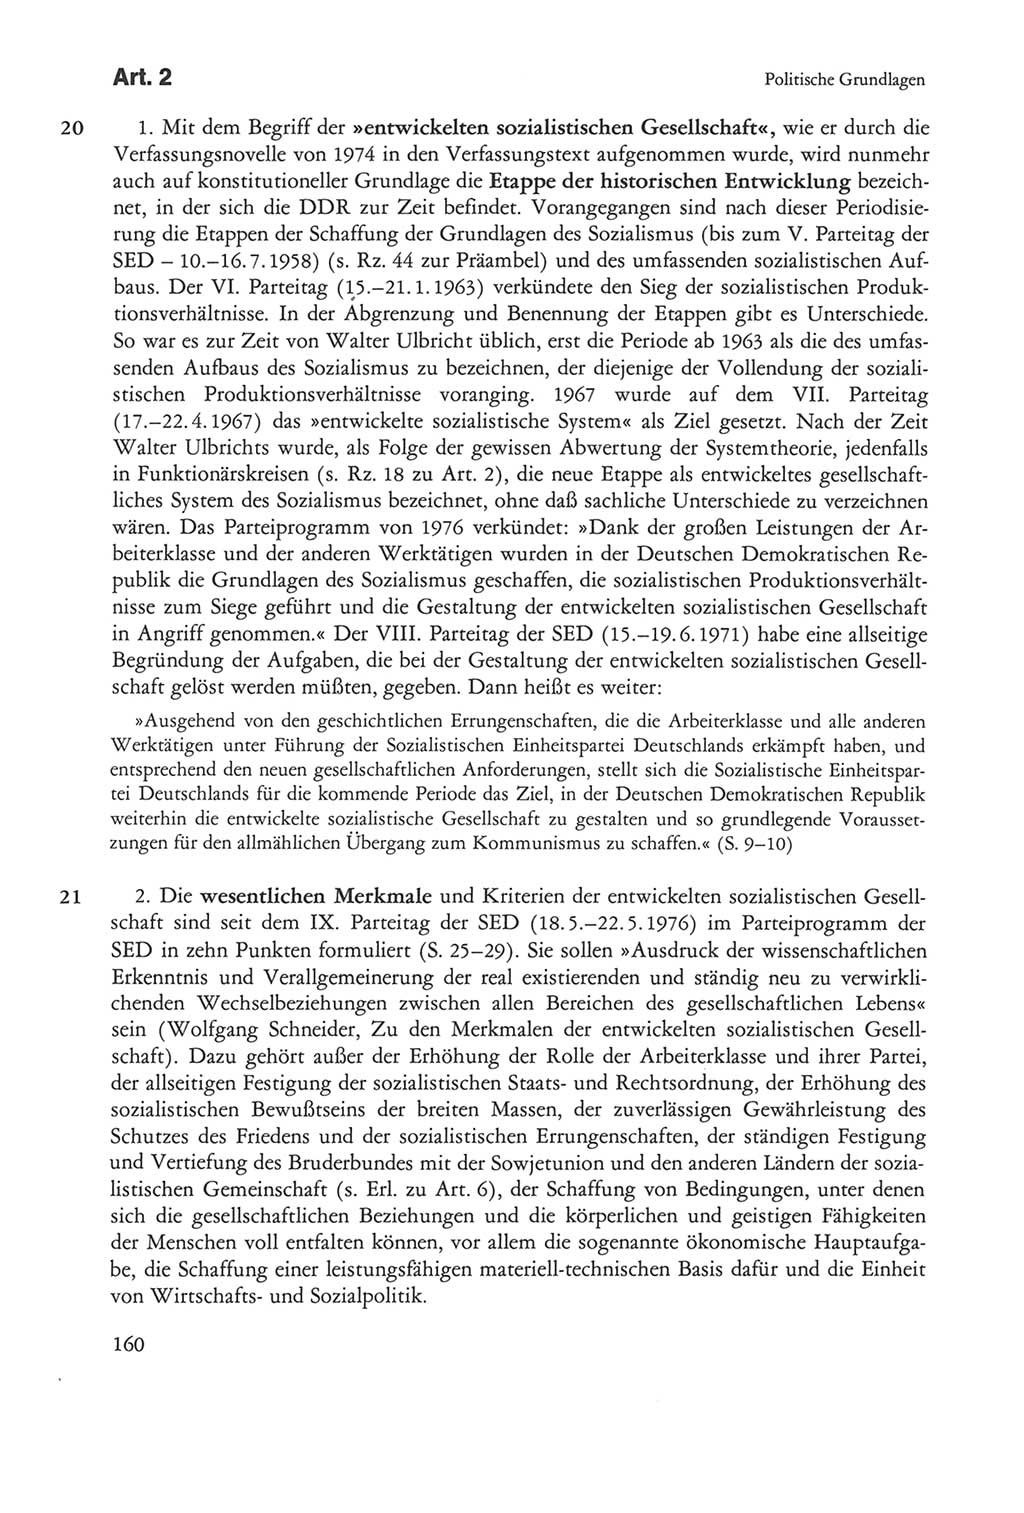 Die sozialistische Verfassung der Deutschen Demokratischen Republik (DDR), Kommentar 1982, Seite 160 (Soz. Verf. DDR Komm. 1982, S. 160)